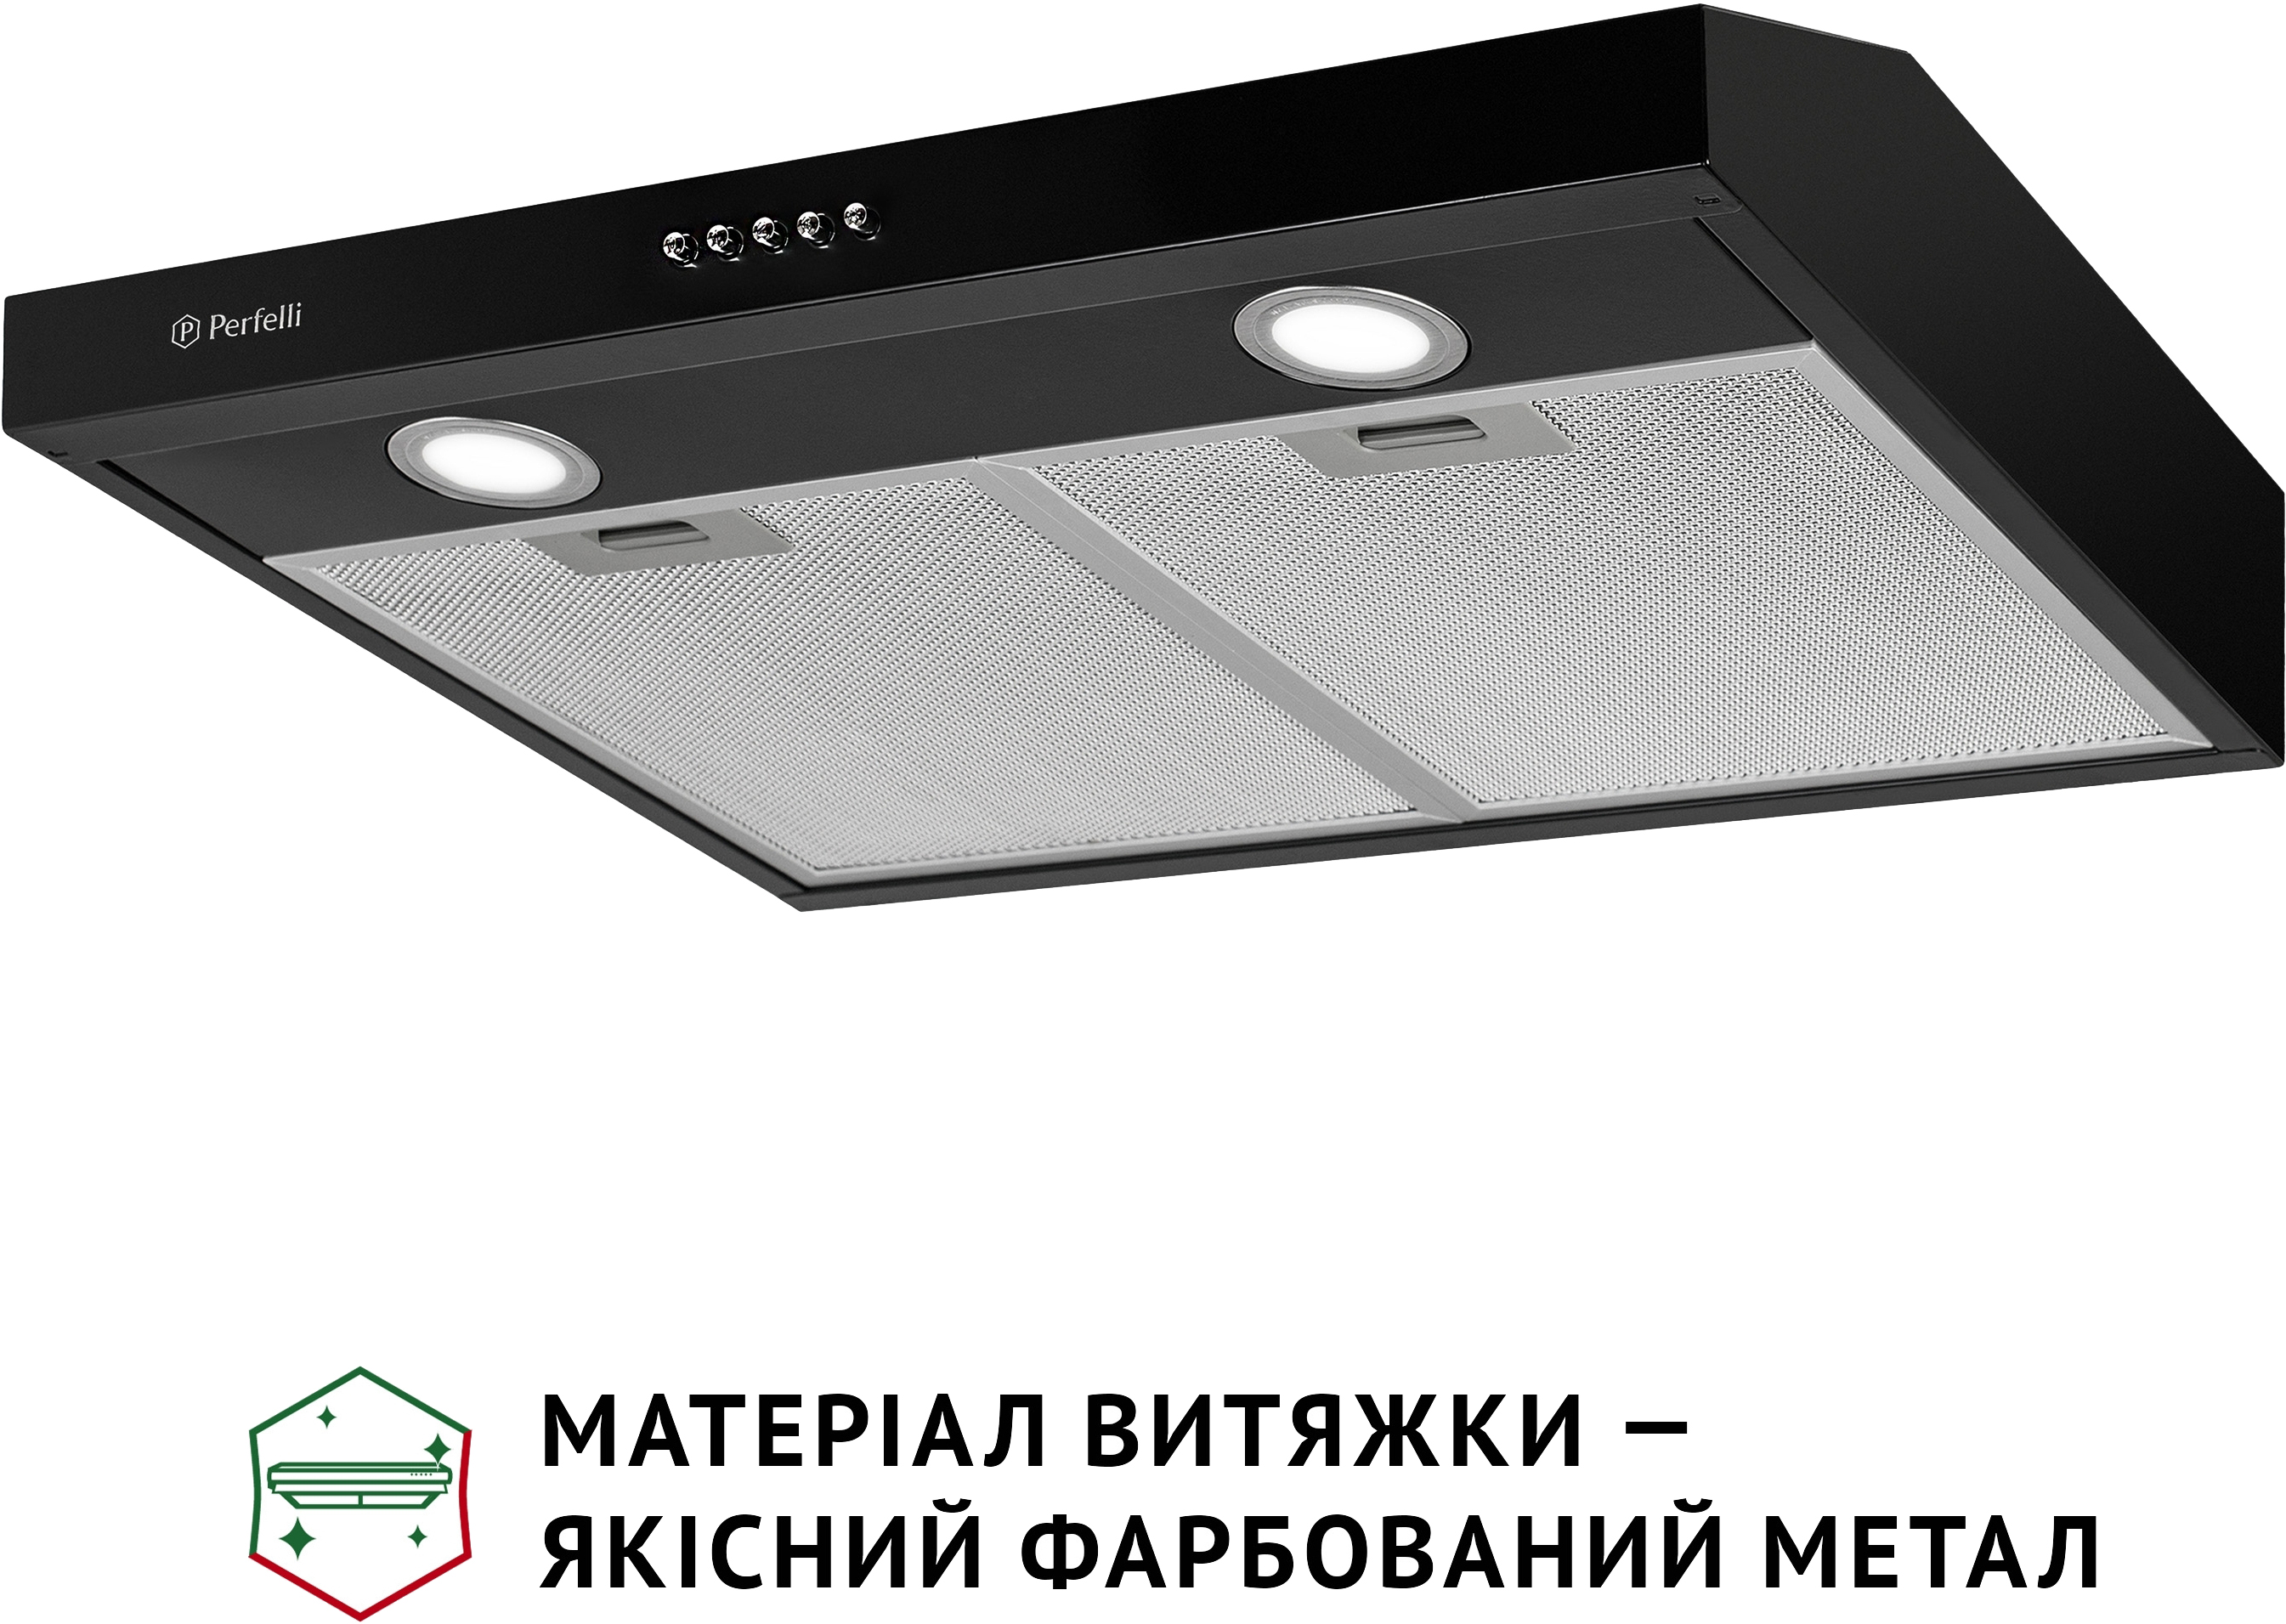 продаємо Perfelli PL 6002 BL LED в Україні - фото 4